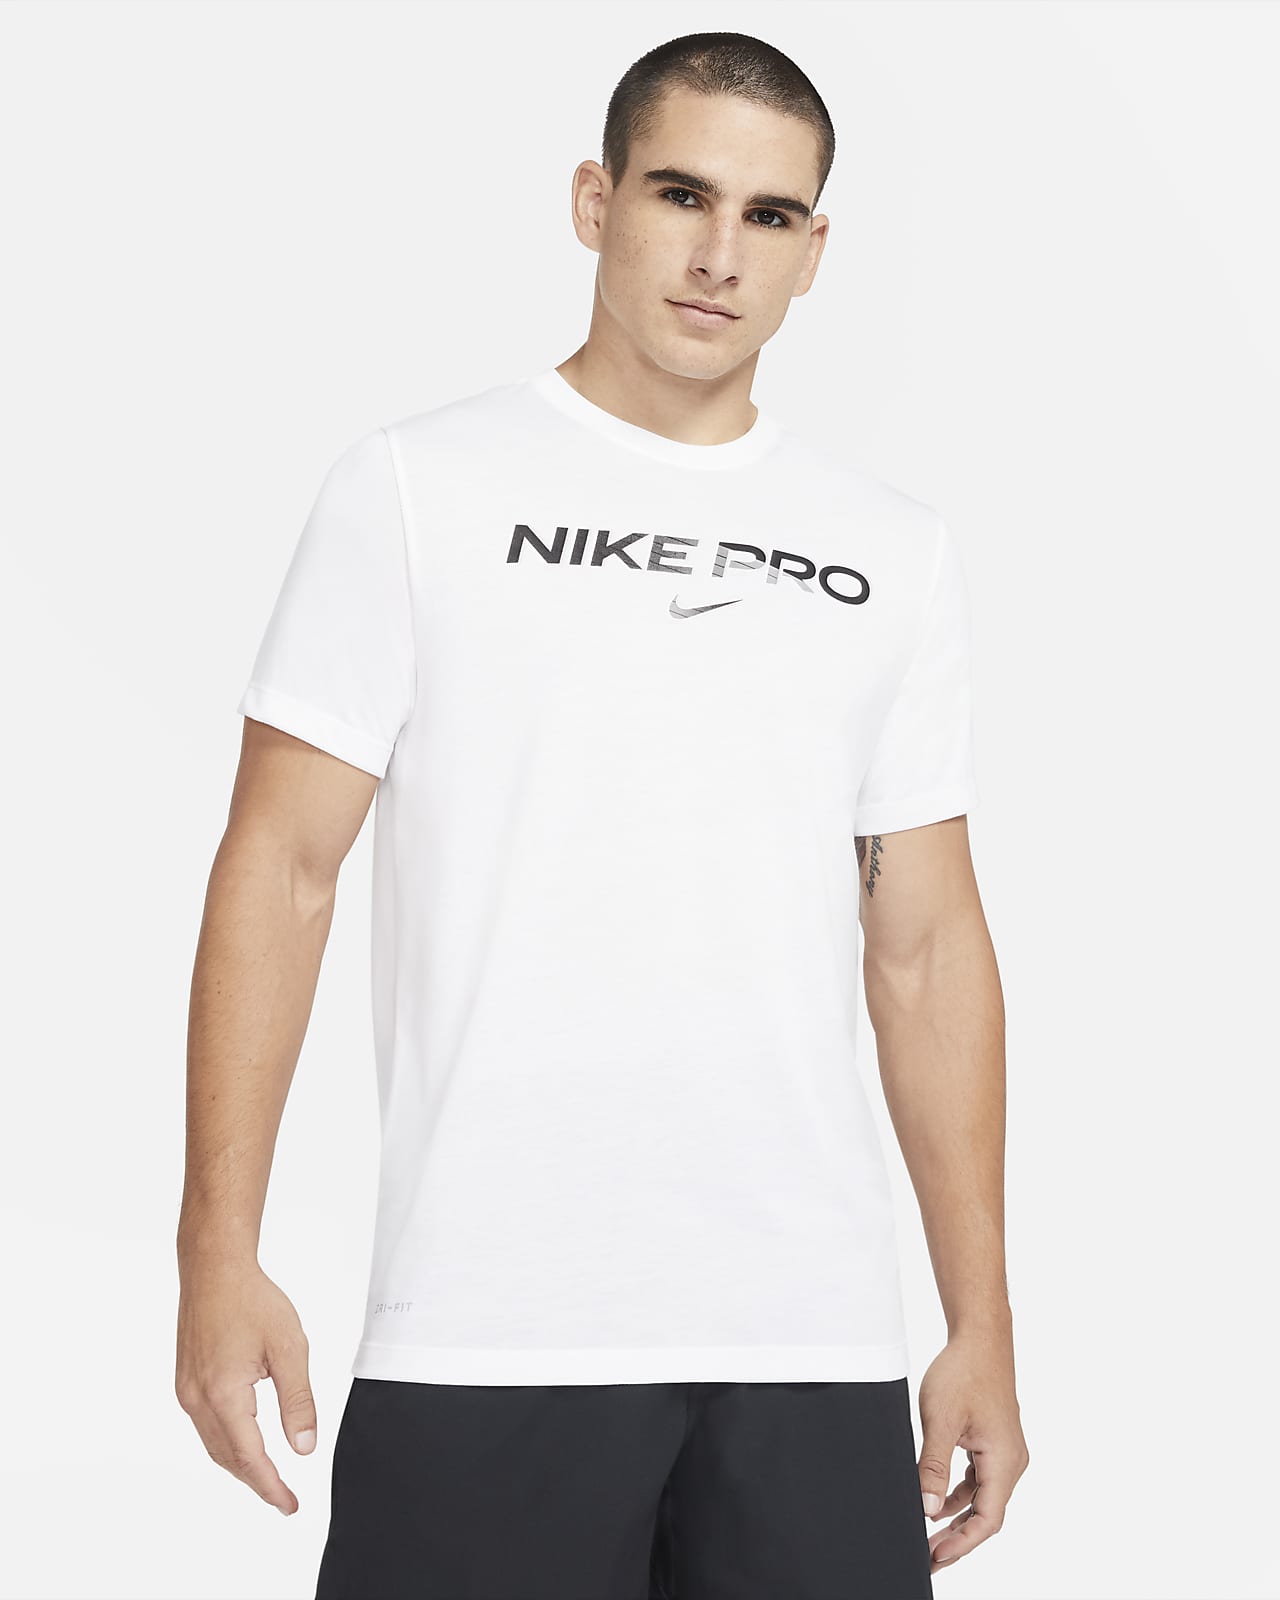 nike pro men's t shirt